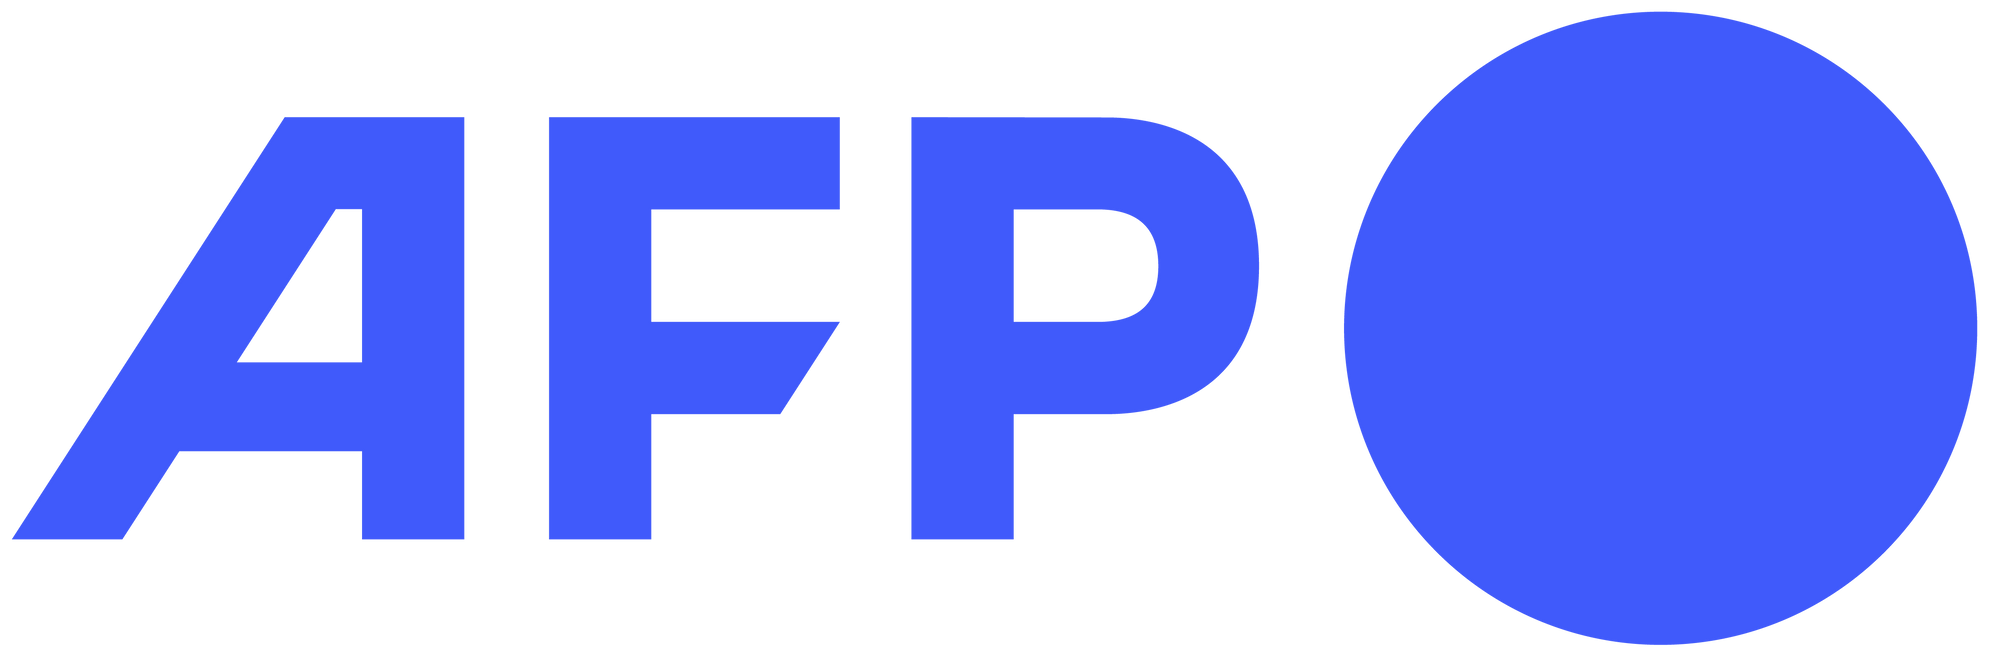 Afp_logotype_rvb_wikipedia.png